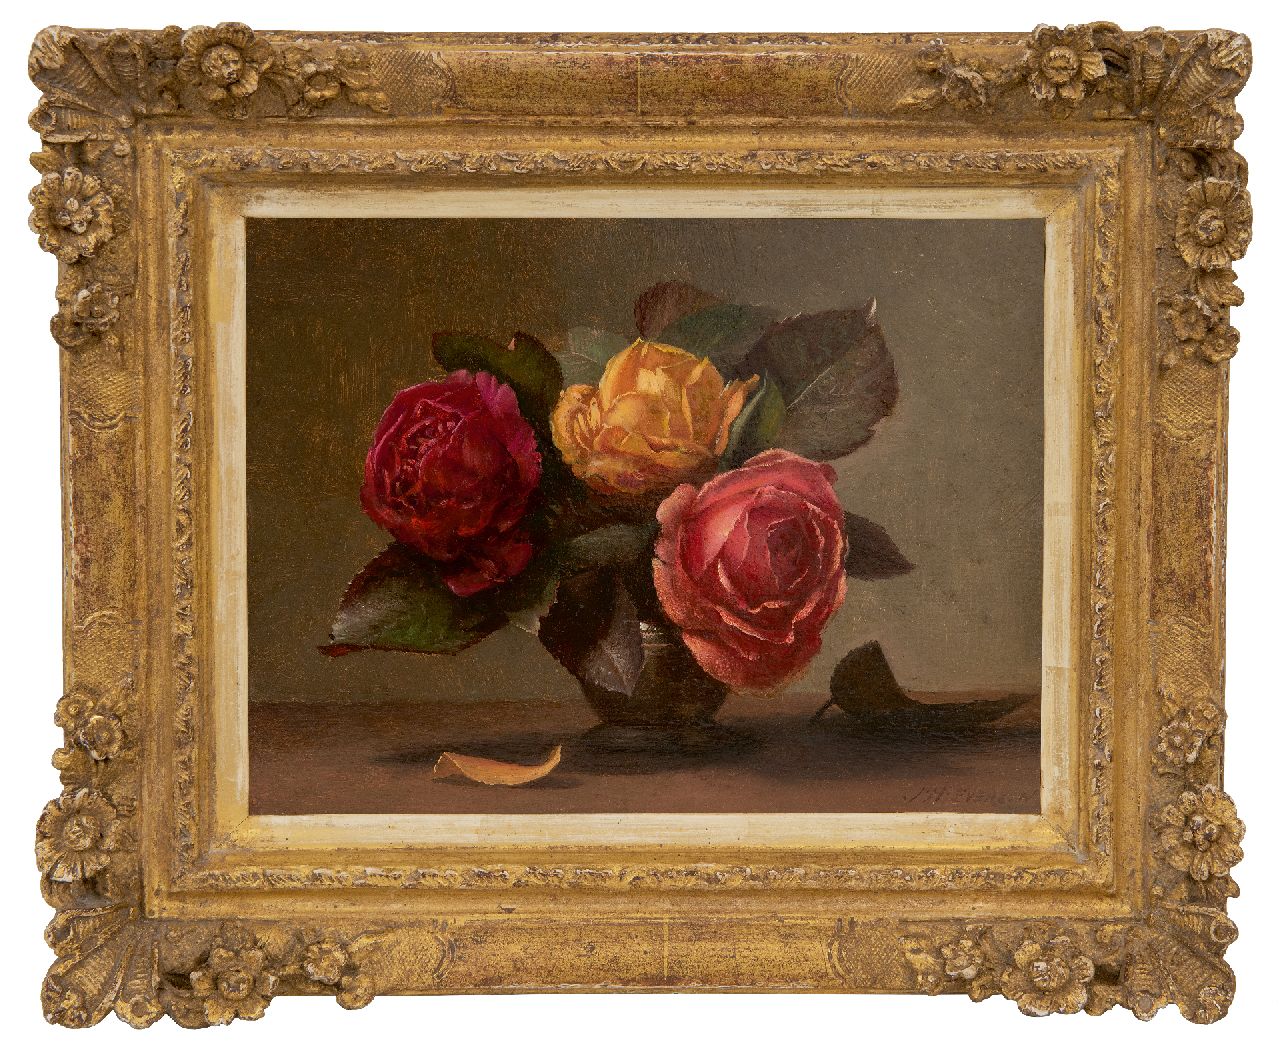 Eversen J.H.  | Johannes Hendrik 'Jan' Eversen | Schilderijen te koop aangeboden | Rozen in een tinnen vaasje, olieverf op paneel 18,2 x 24,1 cm, gesigneerd rechtsonder